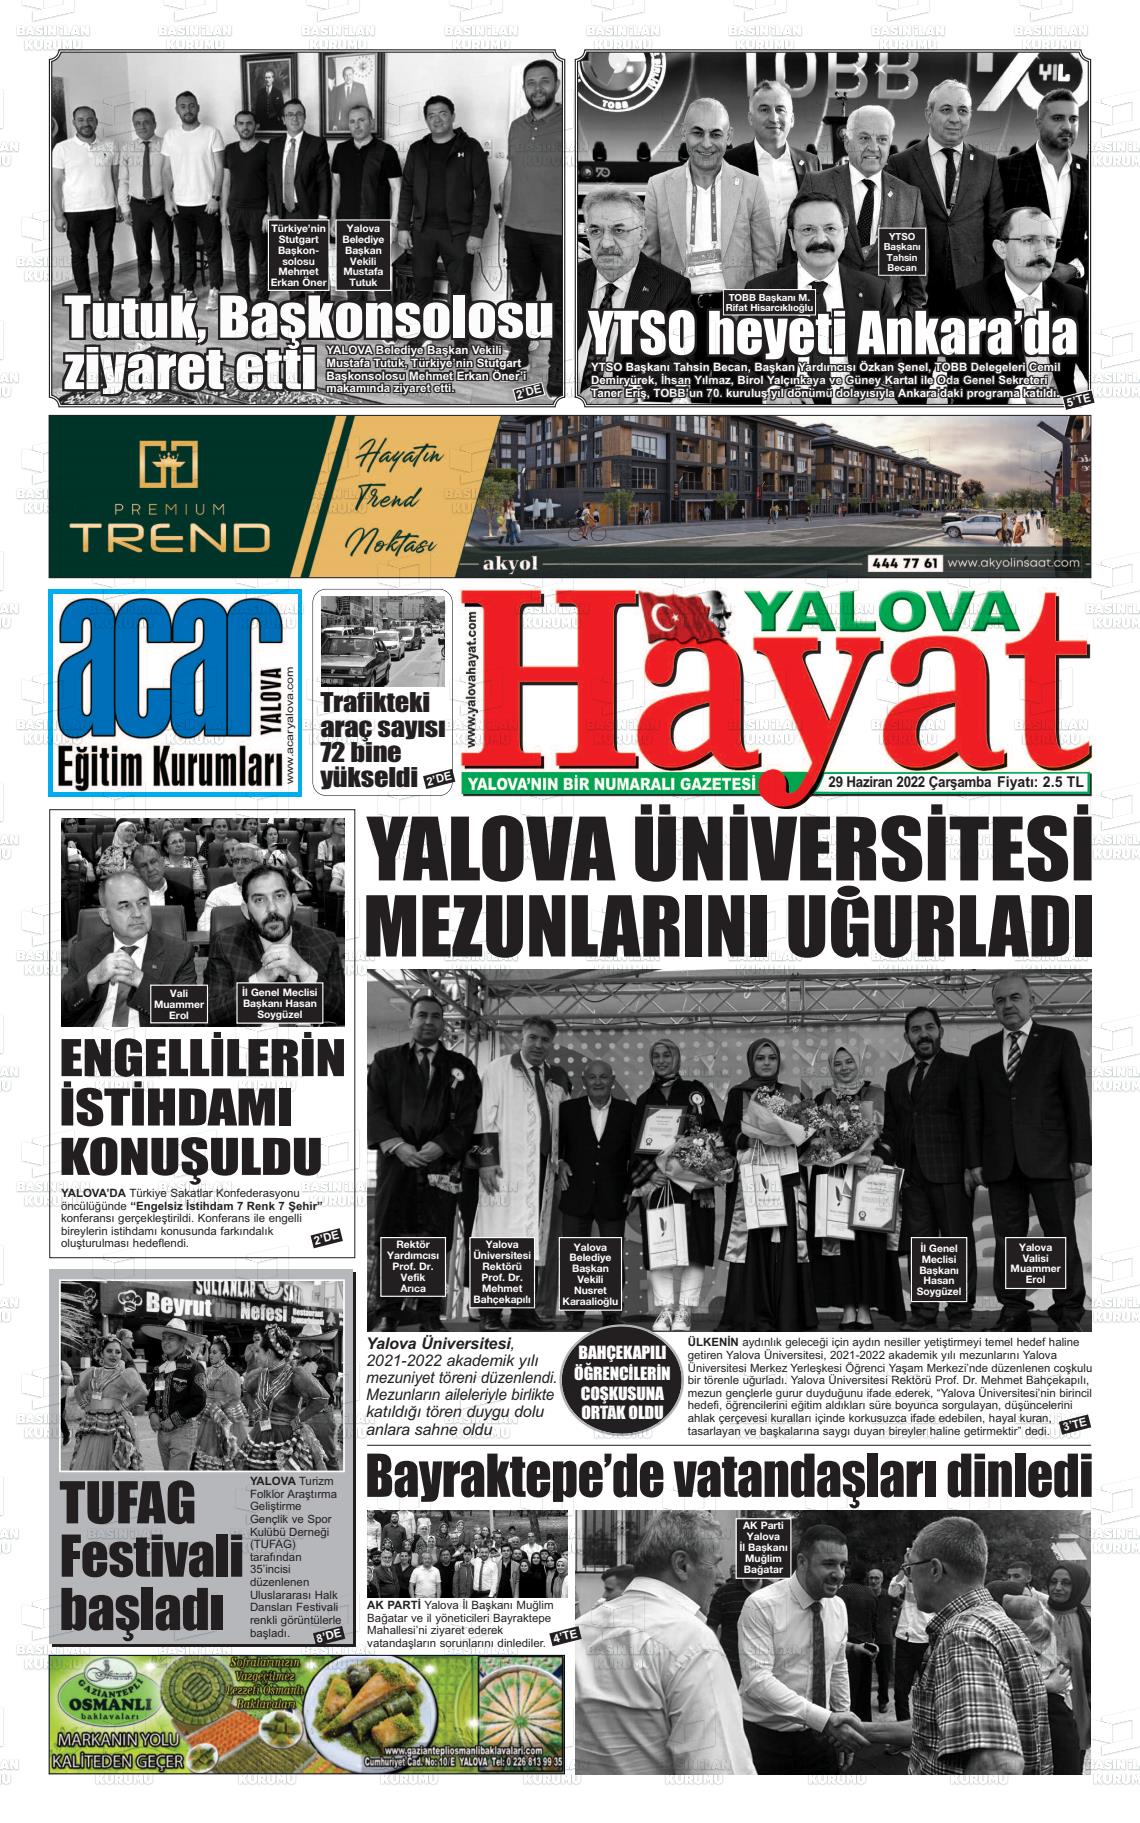 29 Haziran 2022 Yalova Hayat Gazete Manşeti